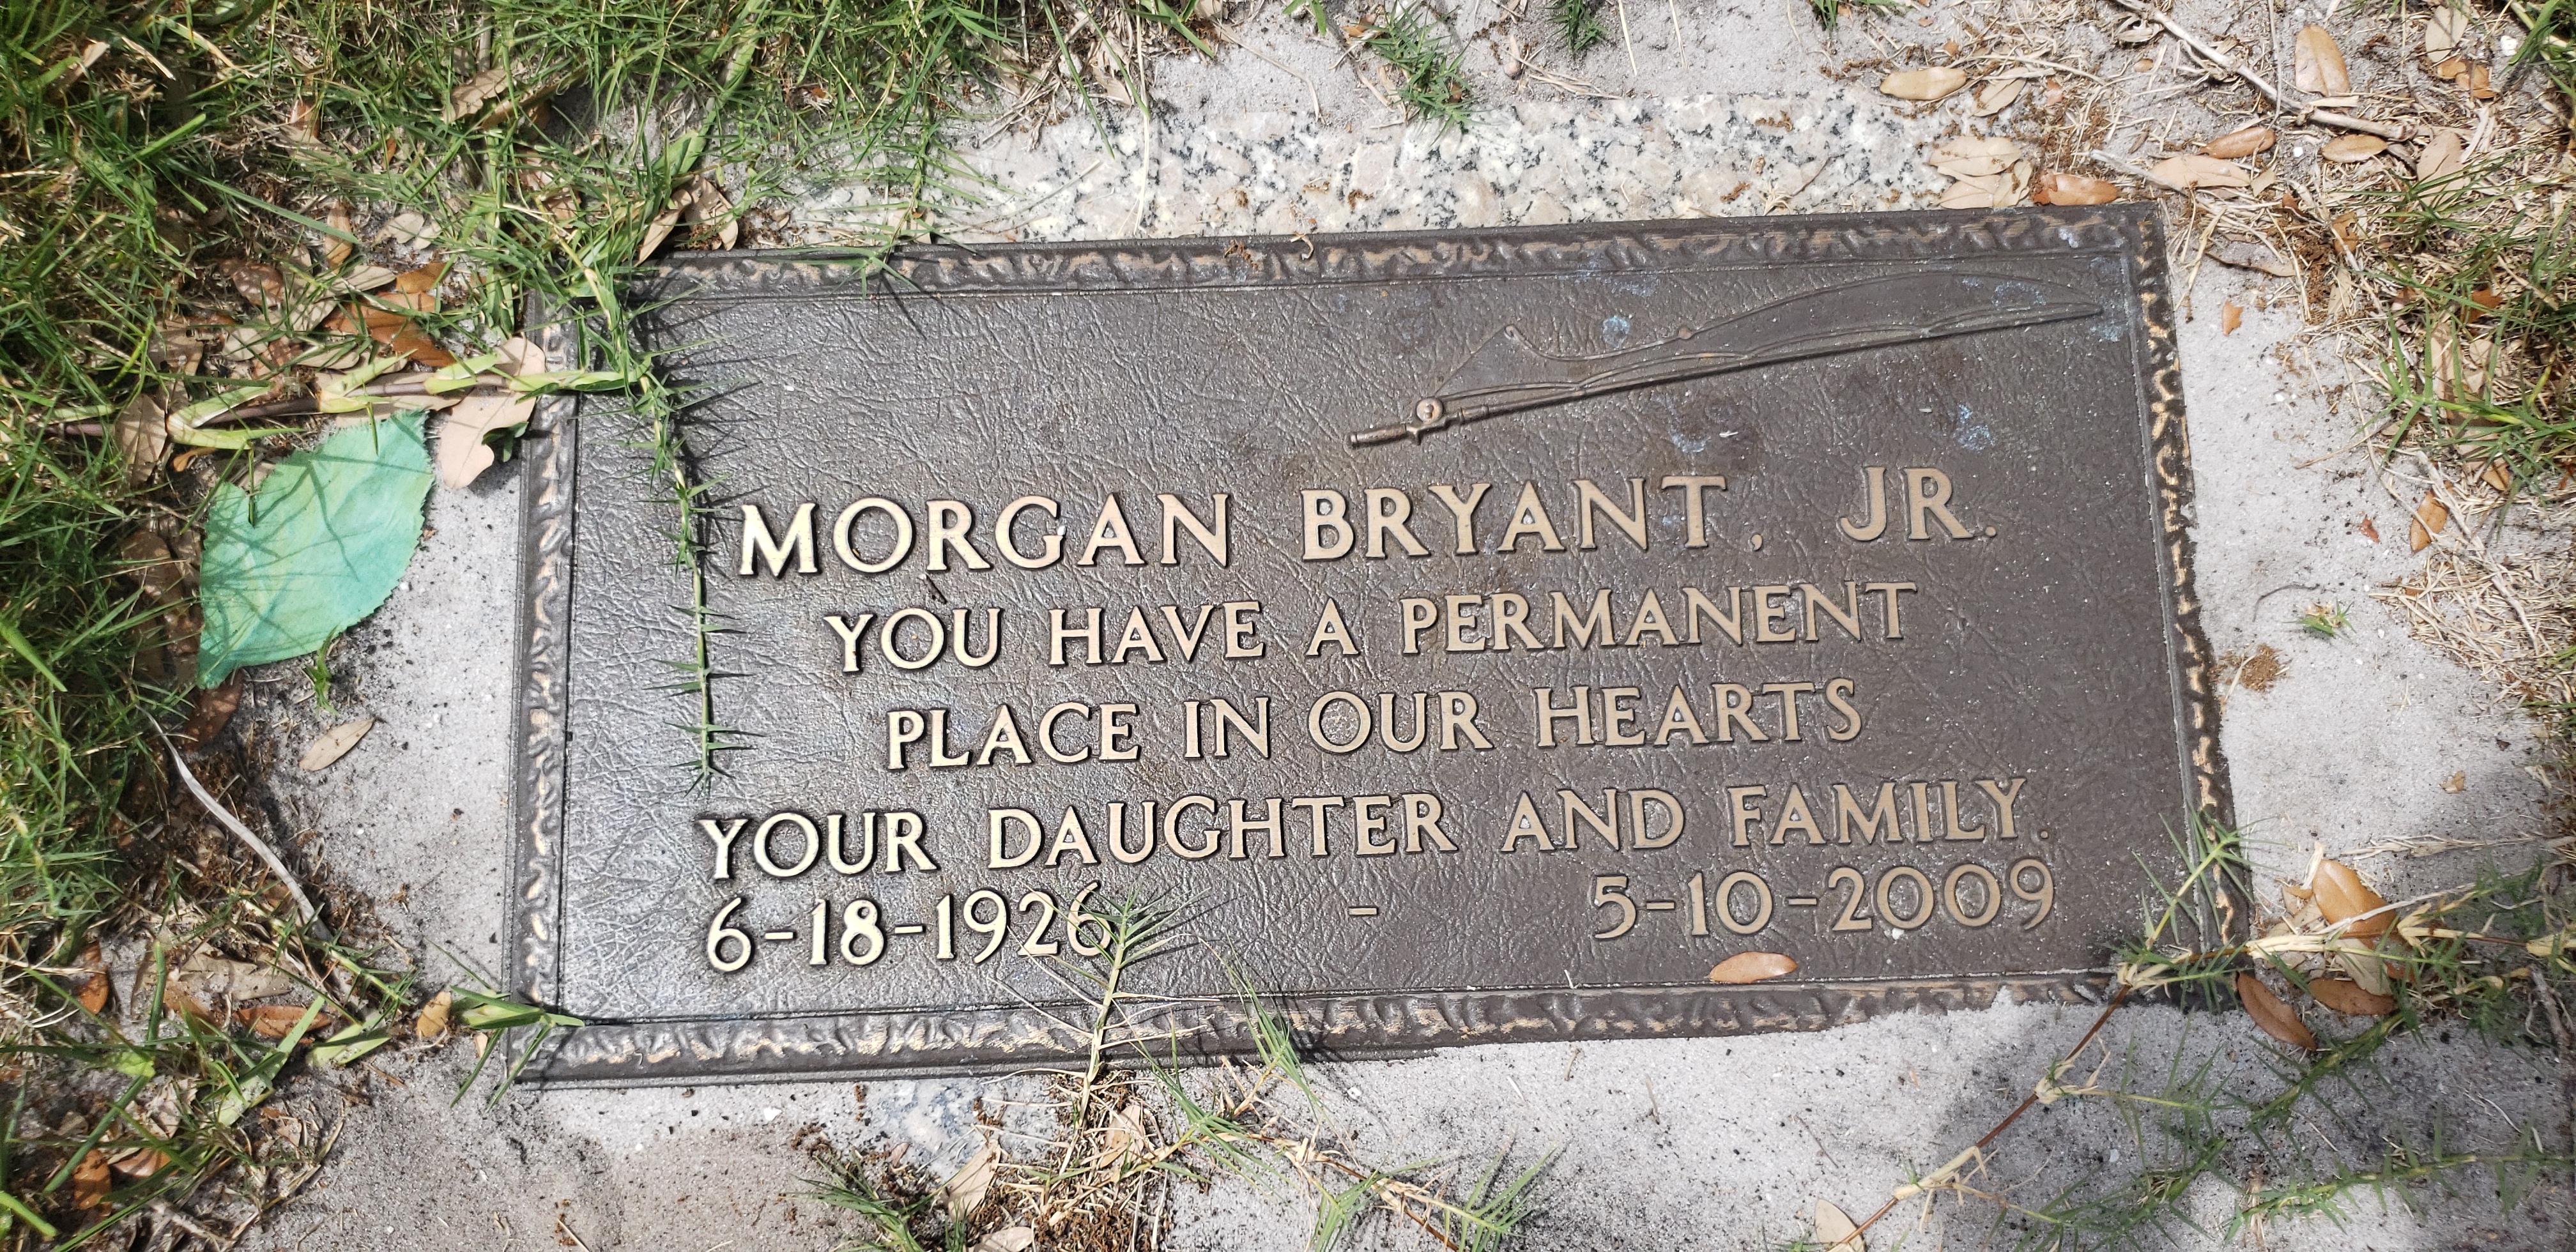 Morgan Bryant, Jr